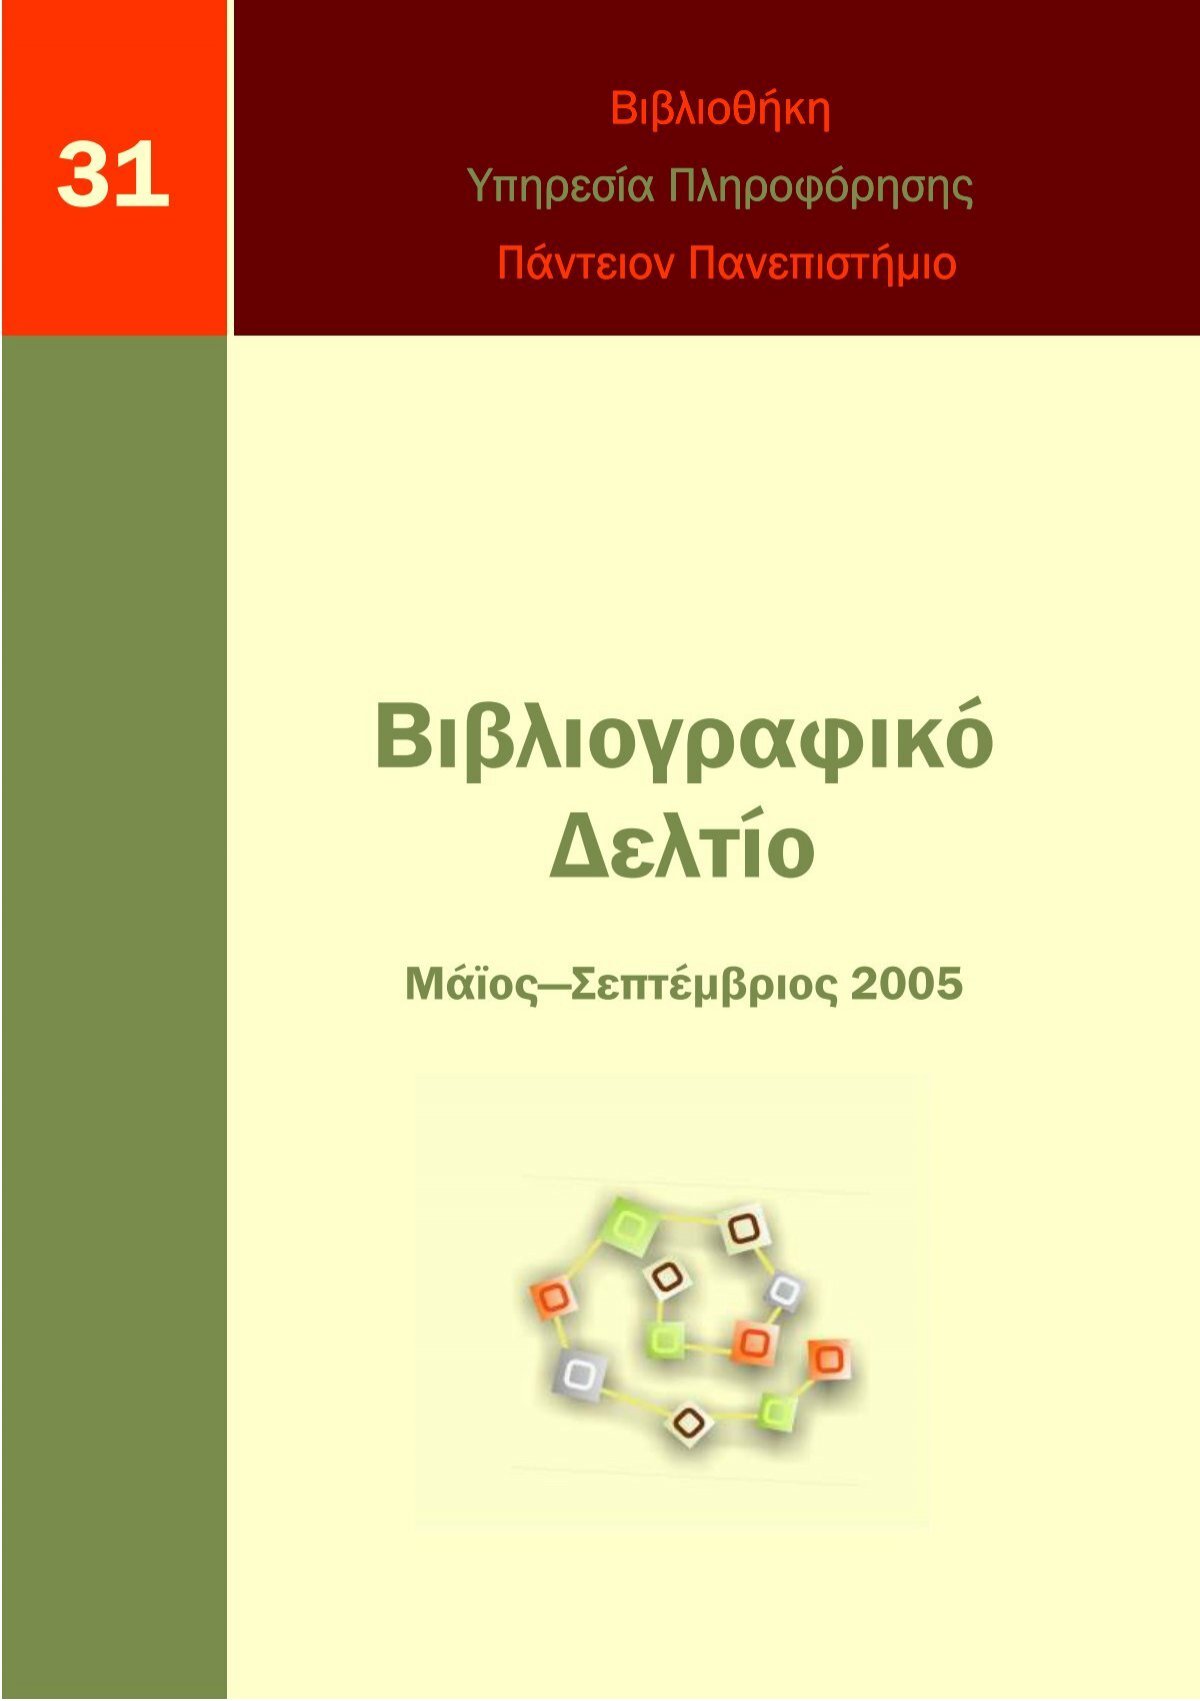 Βιβλιογραφικο δελτίο Μαι-Σεπ 2005 αρ_ 31.pdf - Πάντειο Πανεπιστήμιο